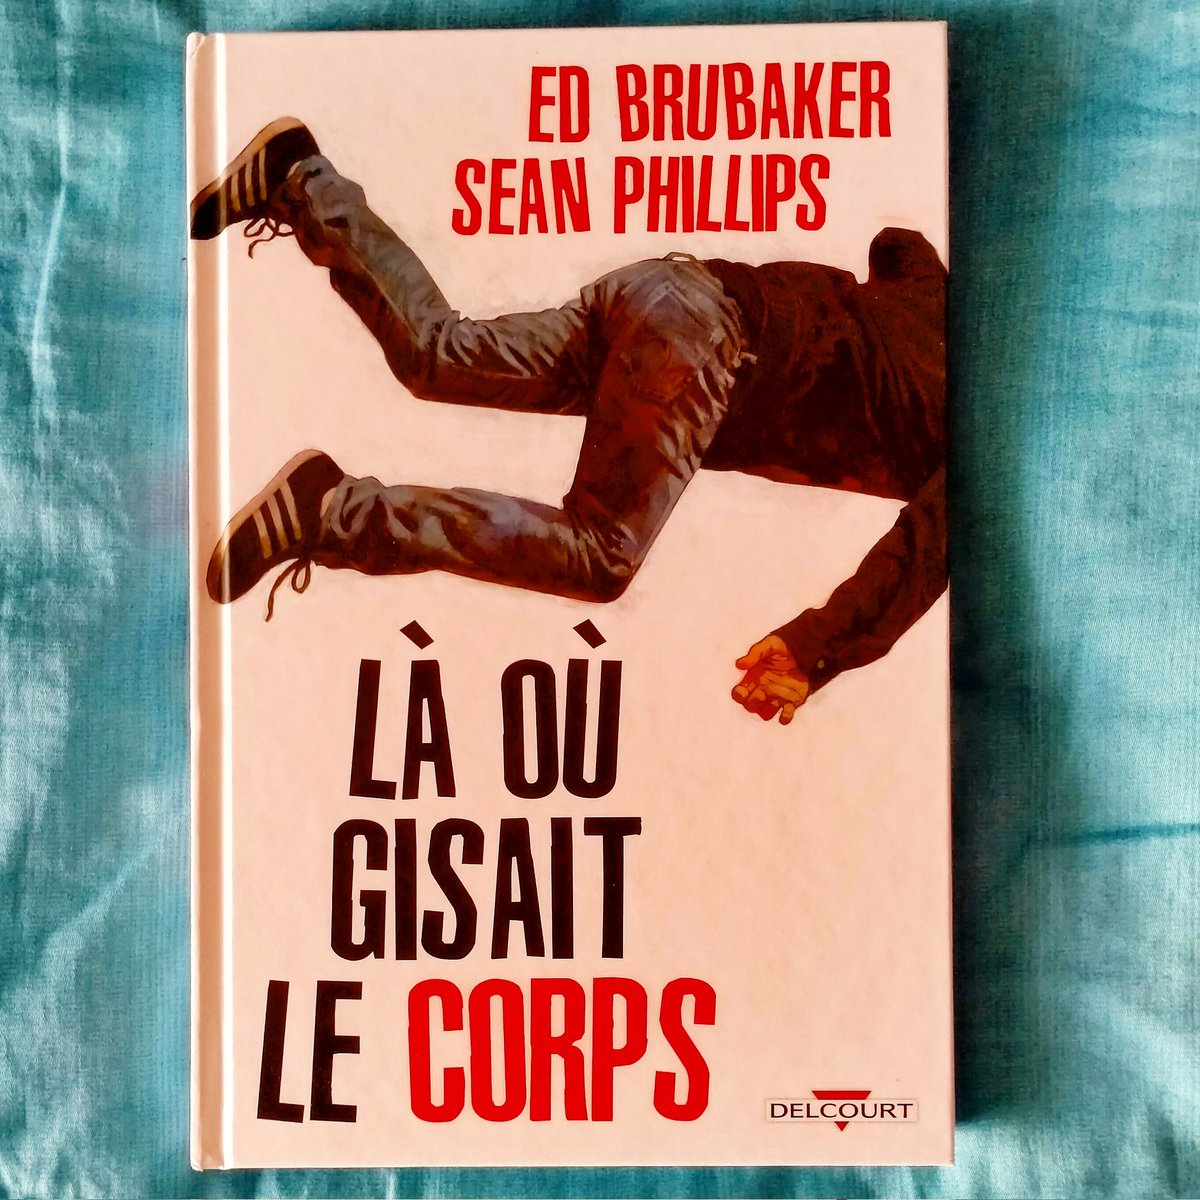 VIDÉO : Là où gisait le corps, nouveauté du duo #EdBrubaker #SeanPhillips. Une grande réussite chez @DelcourtBD Comics 

youtu.be/tu3ZWW590Xc?si…

#bd #comics #comicbook #livre #polar